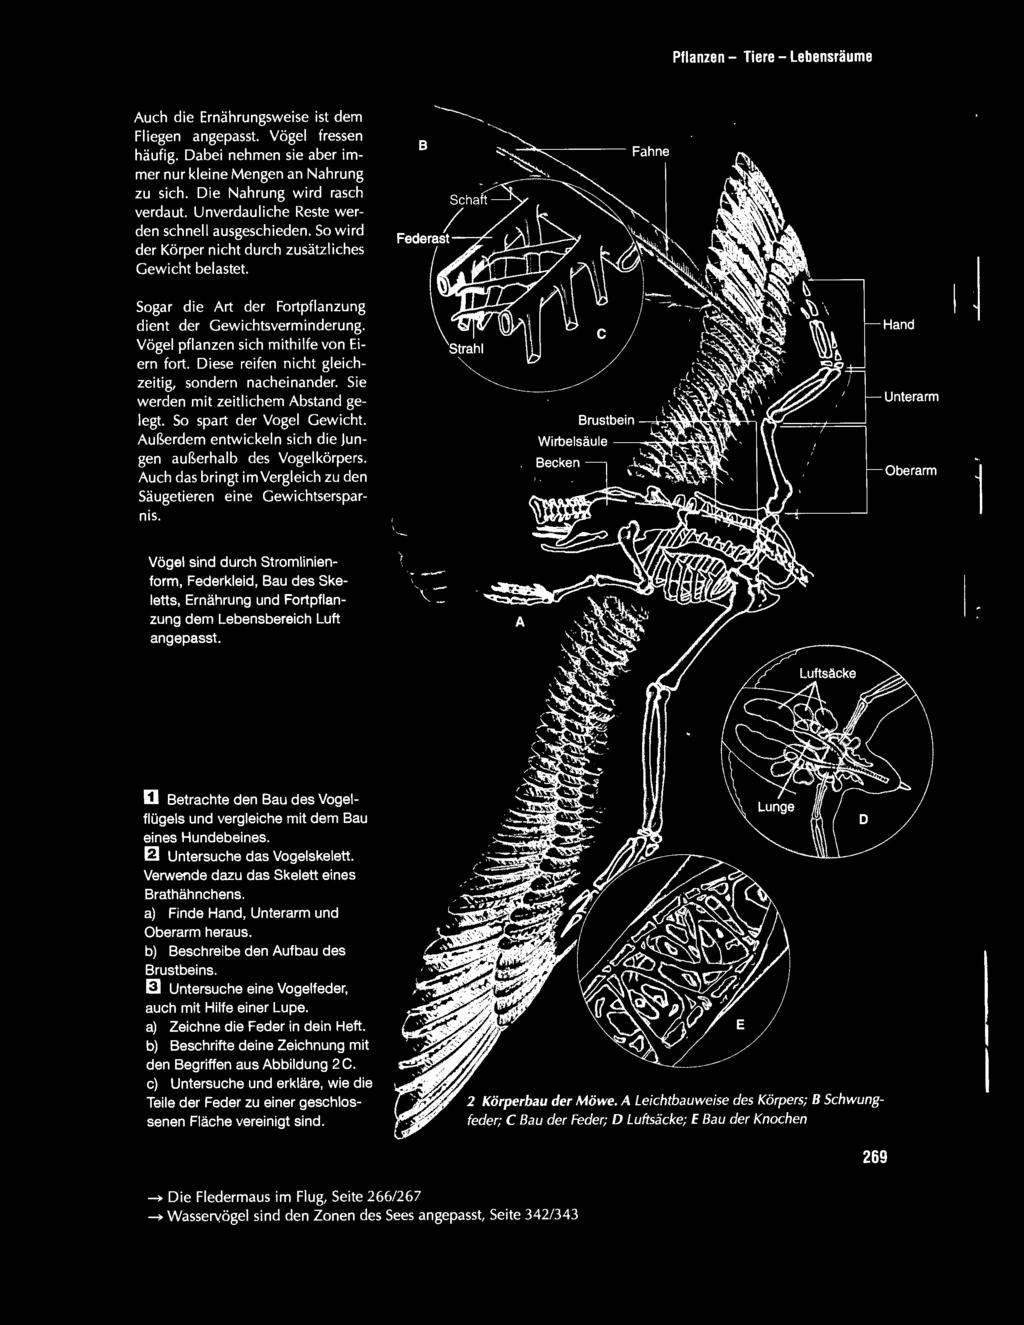 Hand Unterarm Oberarm 1 Vögel sind durch Stromlinienform, Federkleid, Bau des Skeletts, Ernährung und Fortpflanzung dem Lebensbereich Luft angepasst.